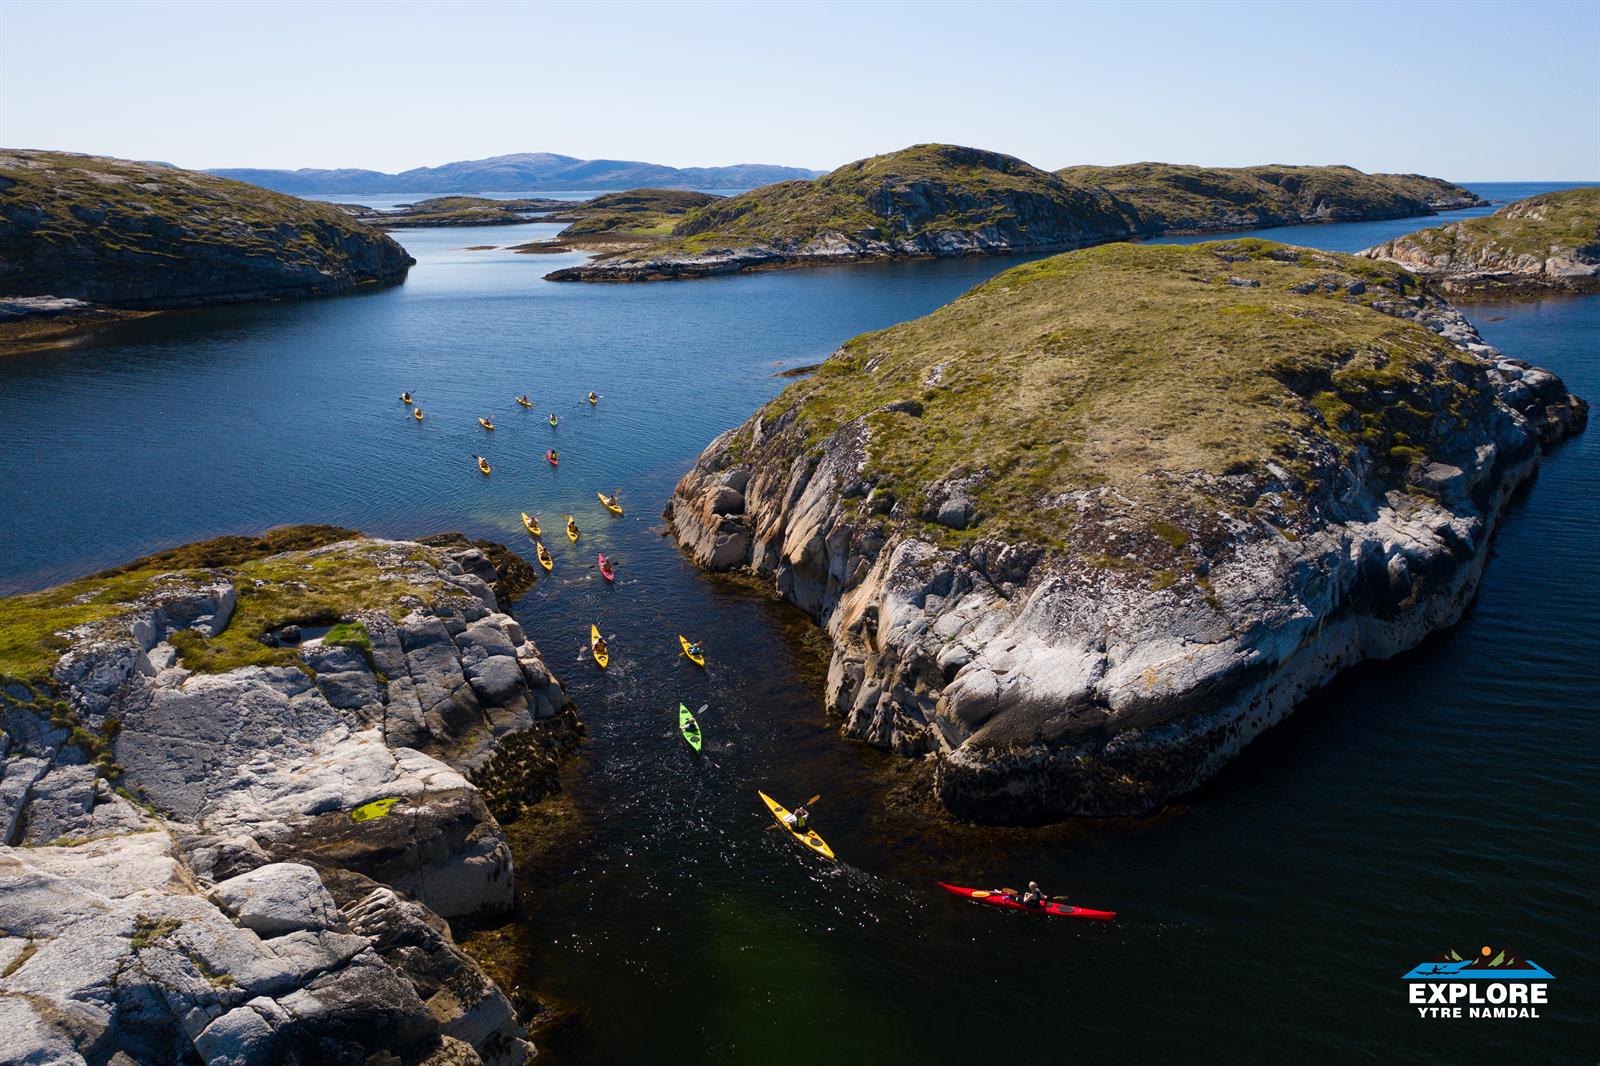 Kayaking in the Namdal archipelago - Explore Ytre Namdal